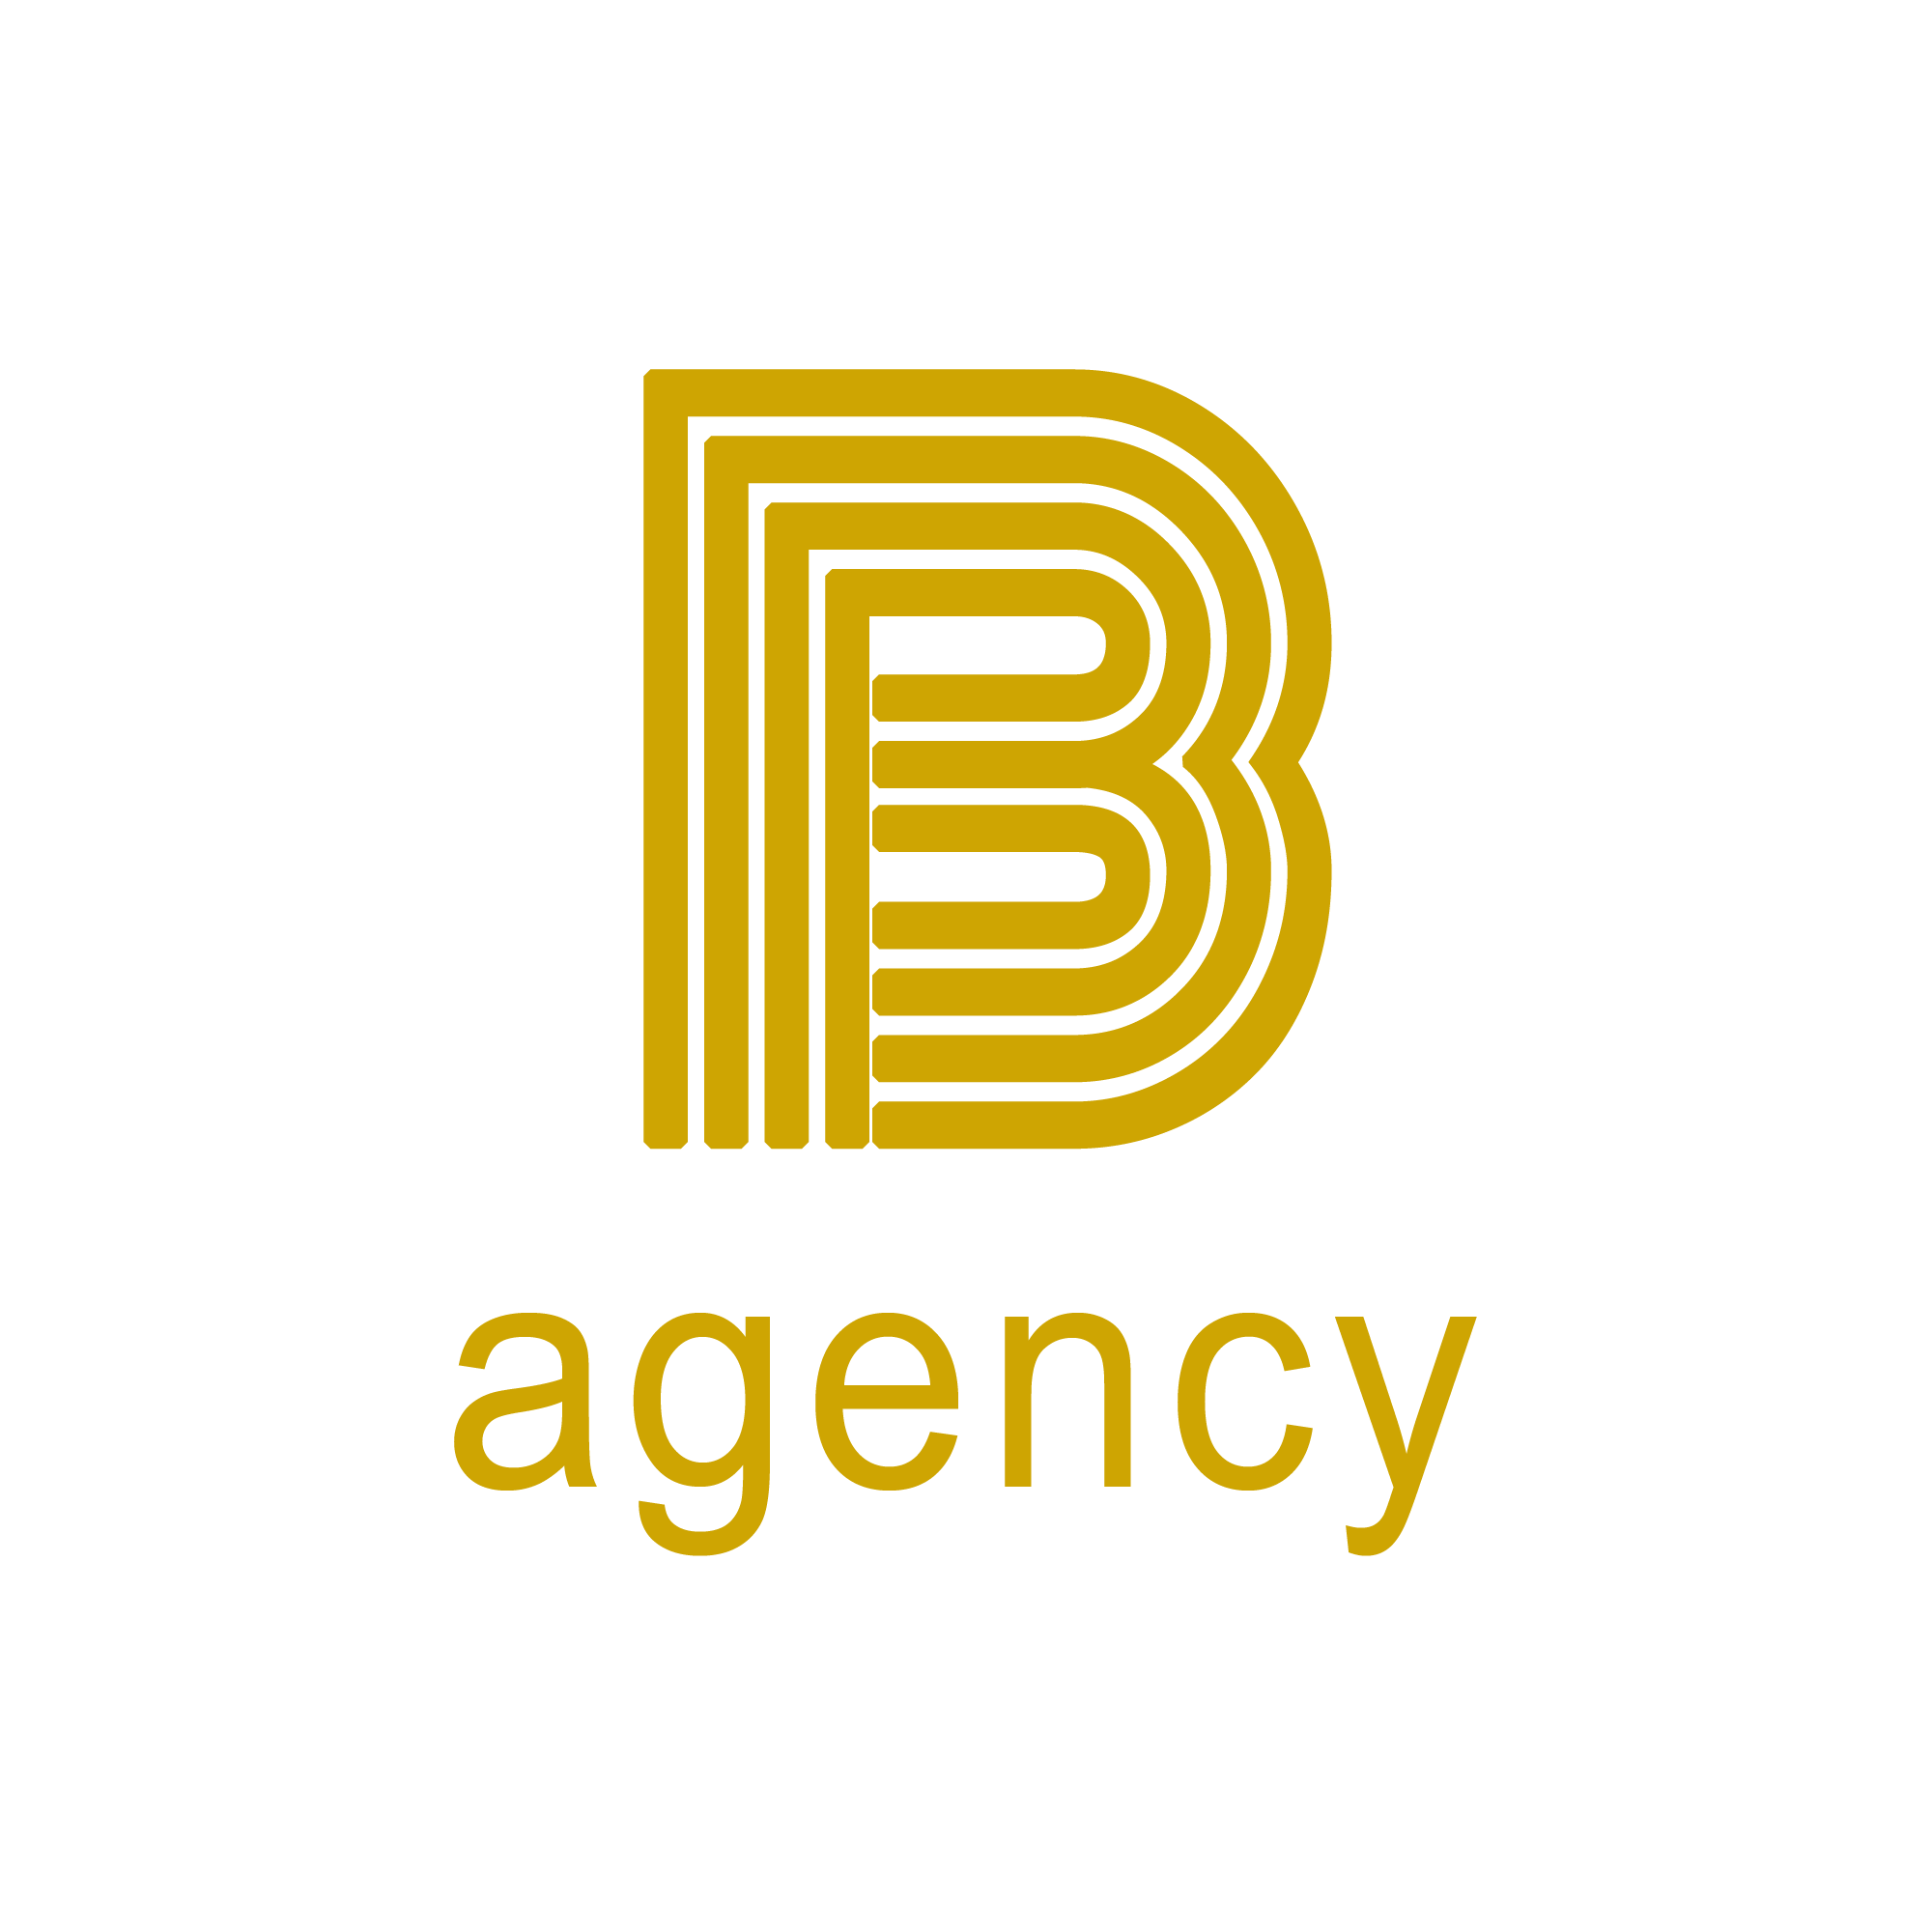 B agency vang den png Dịch Vụ Marketing Online Tổng Thể Chuyên Nghiệp